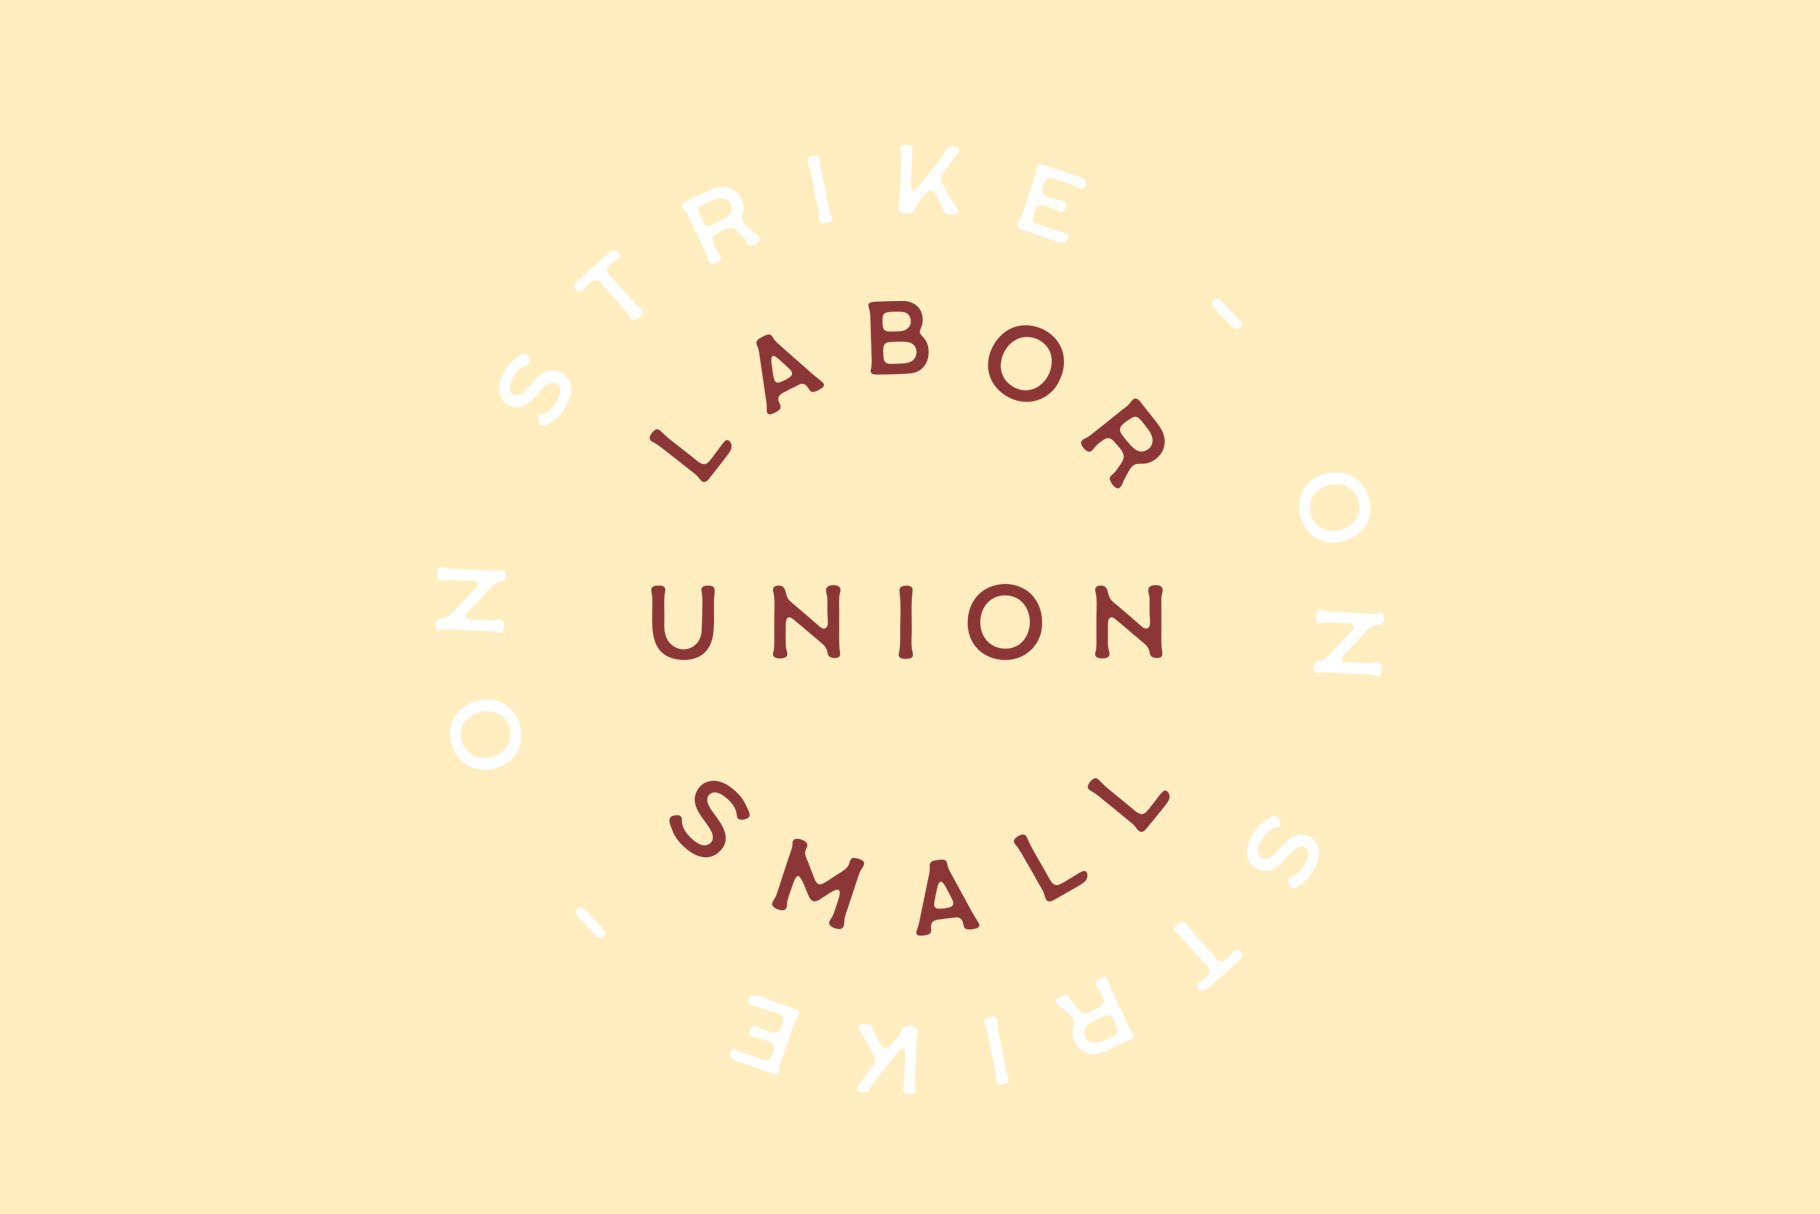 Police Labor Union Small